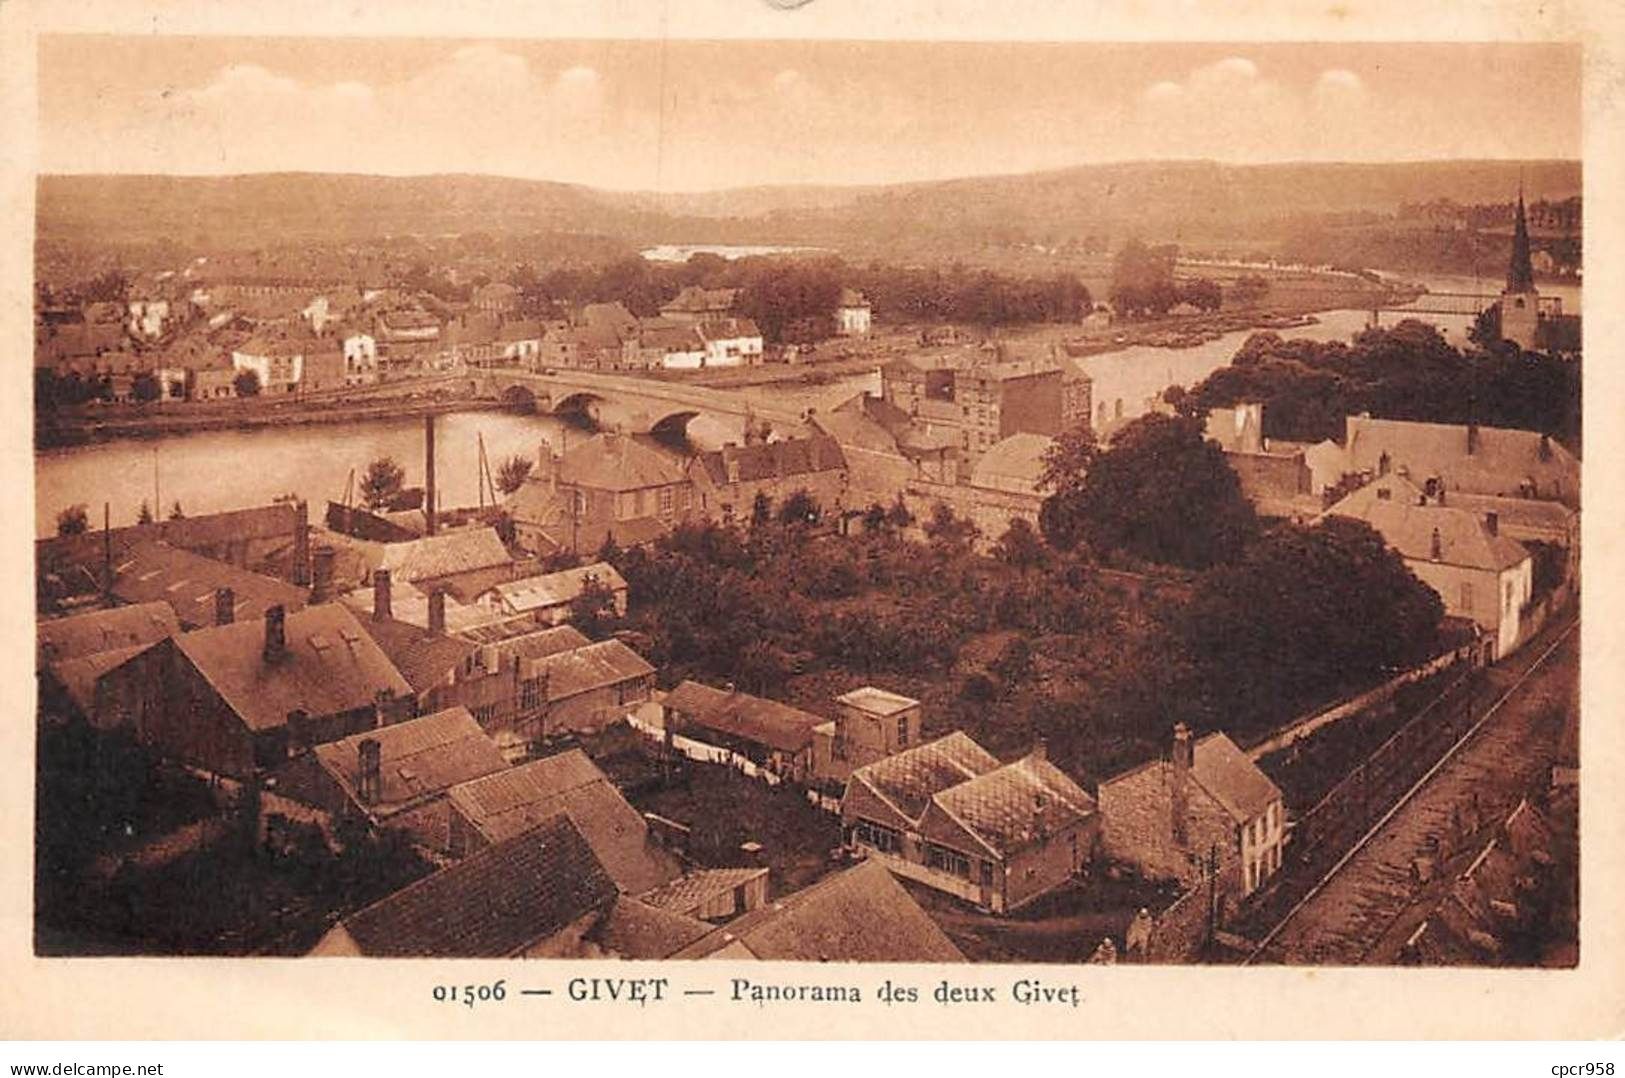 08 - GIVET - SAN43137 - Panorama Des Deux Givet - Givet